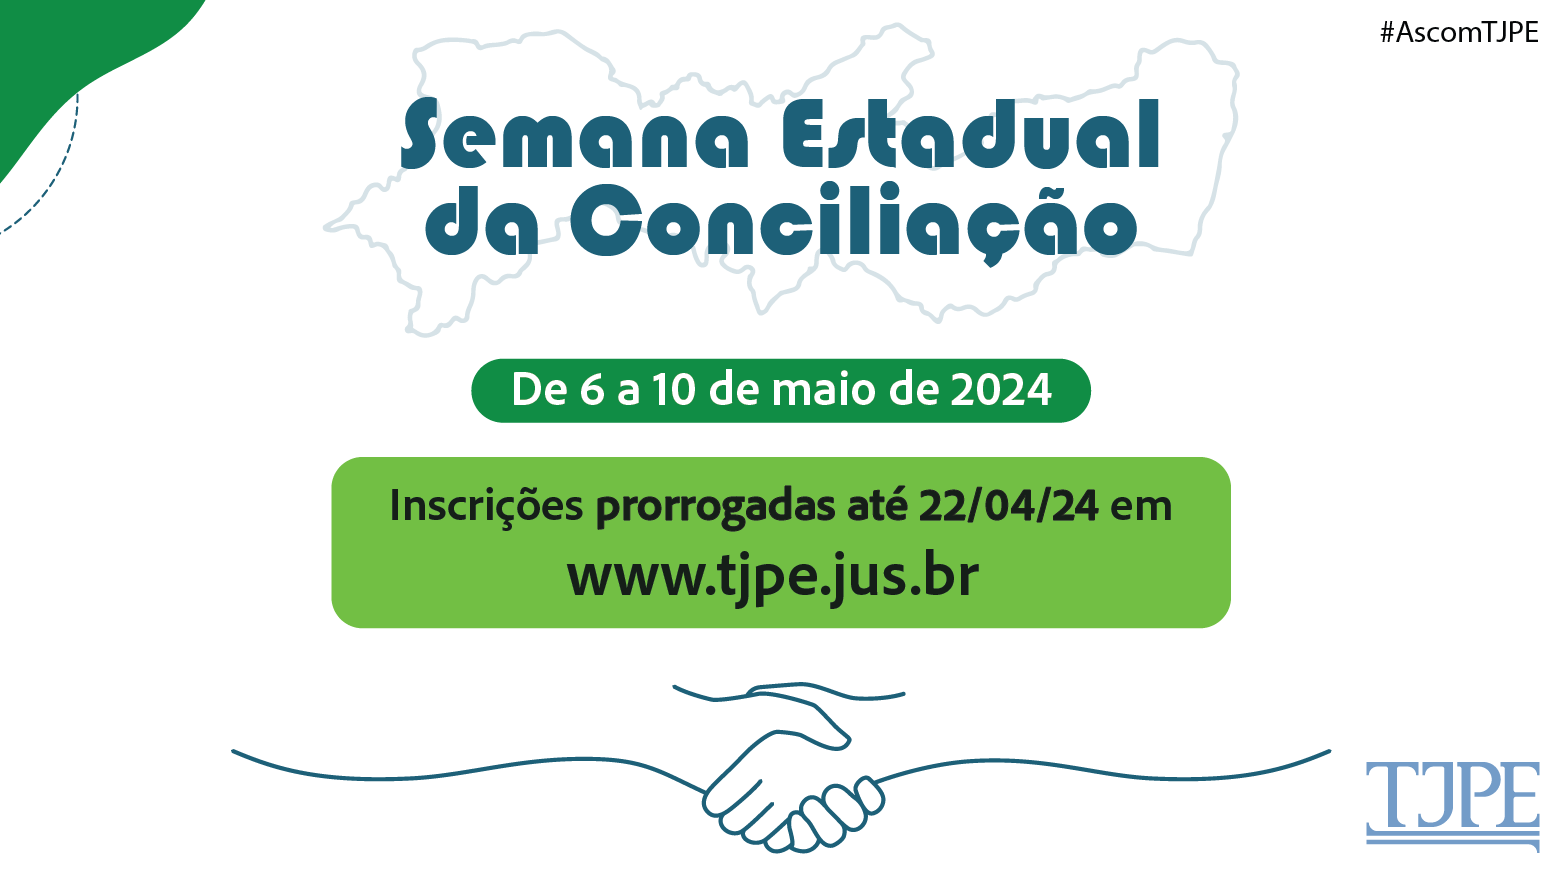 Inscrições prorrogadas para a Semana Estadual da Conciliação - TJPE